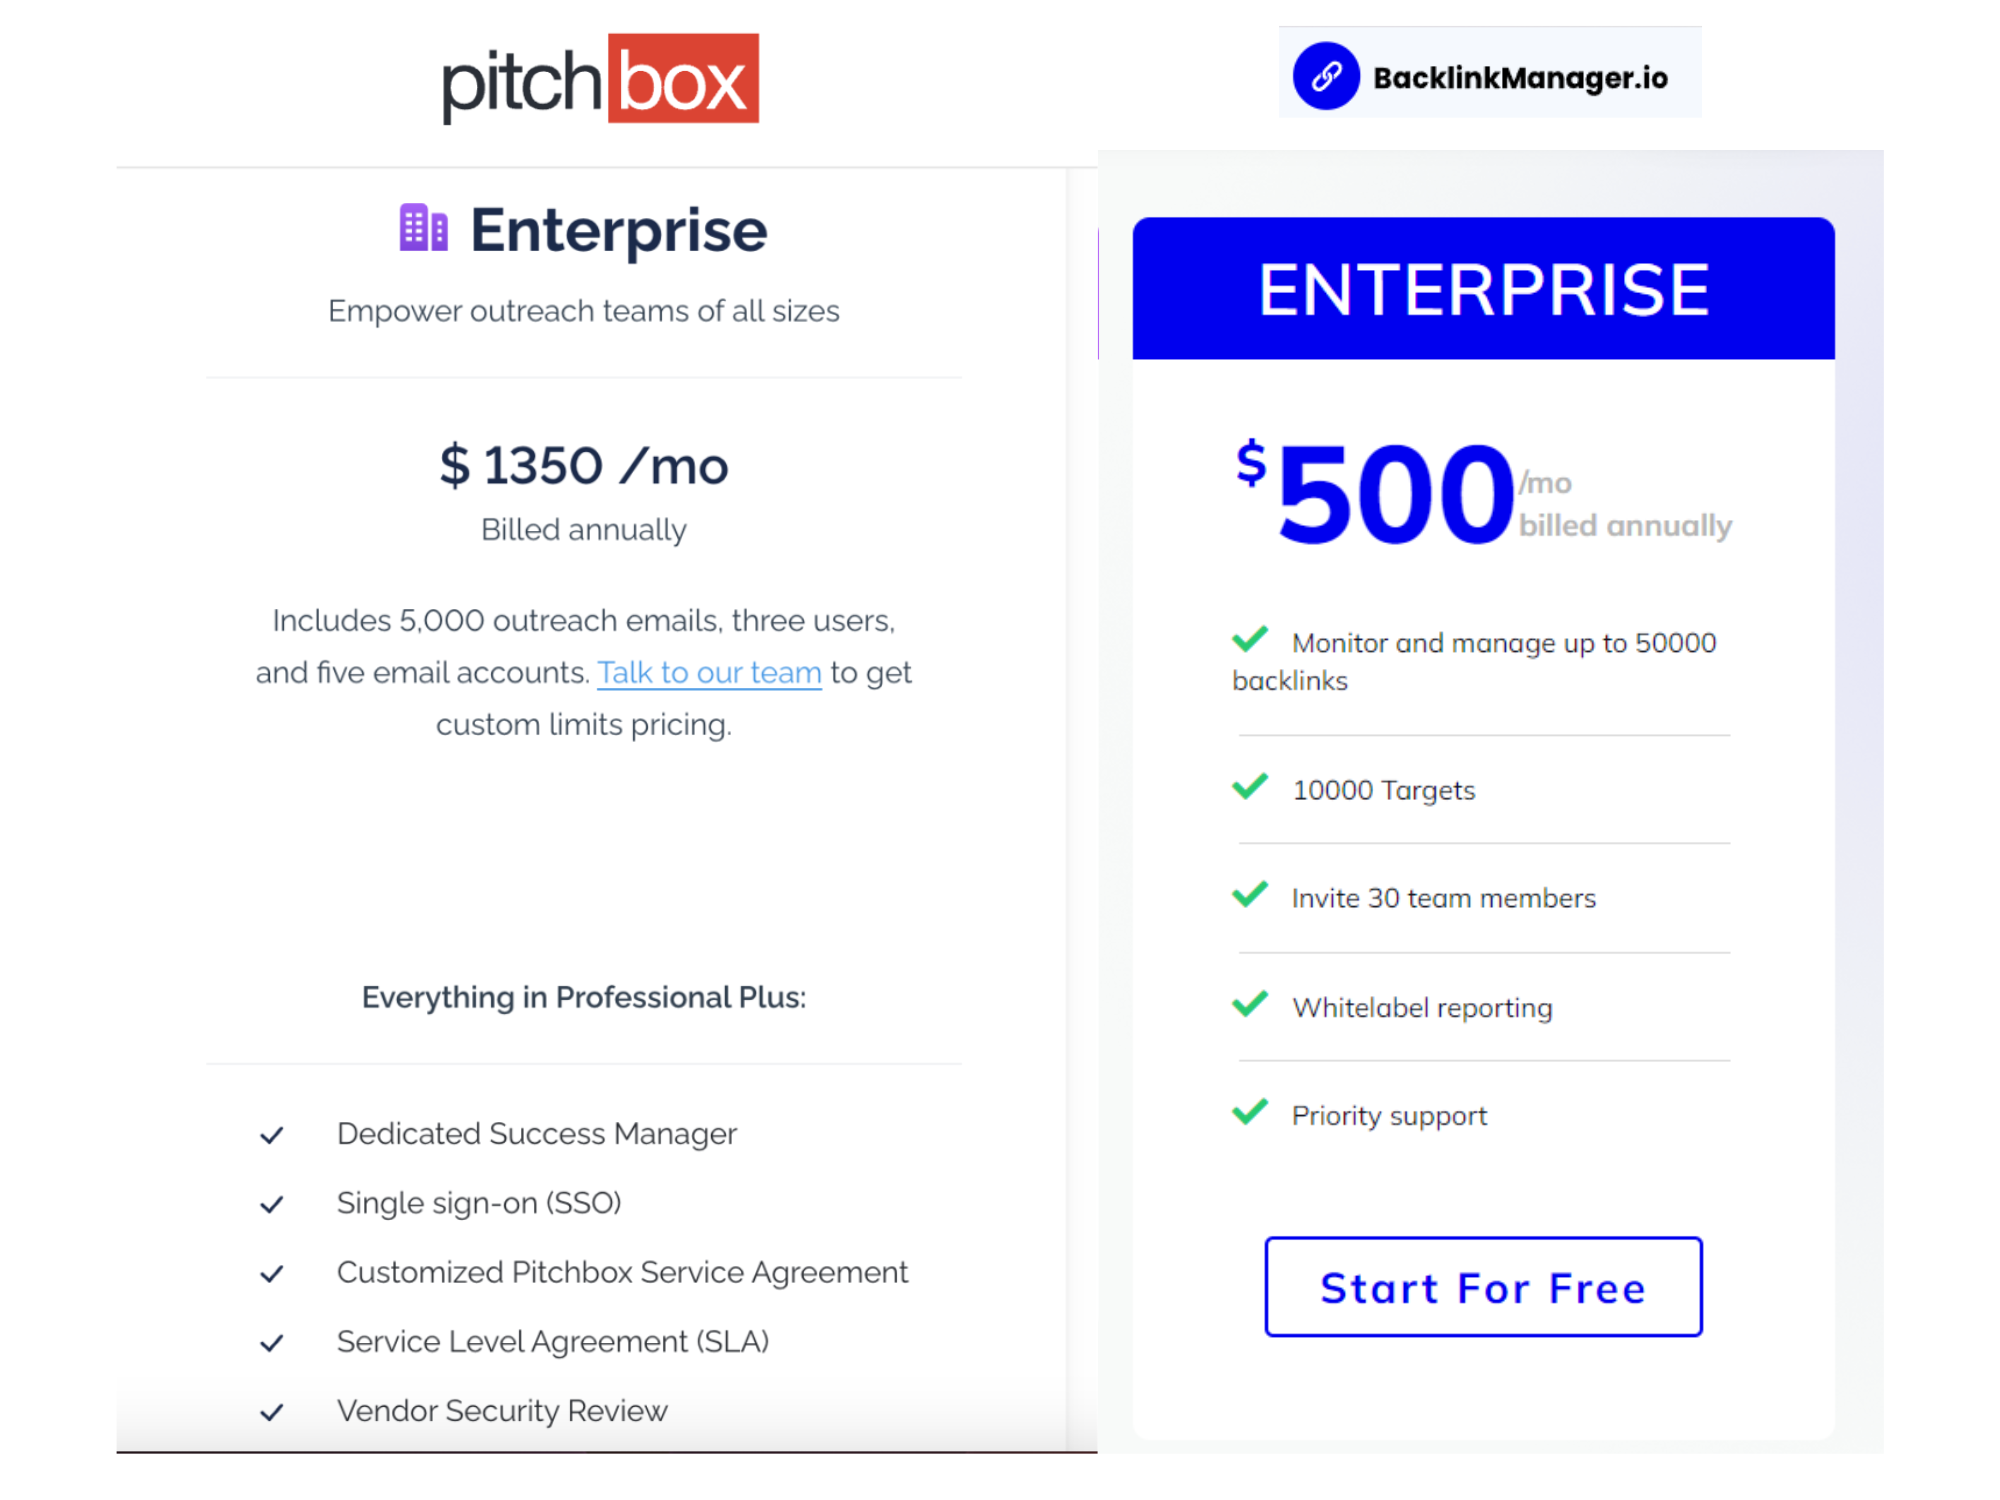 Backlink Manager Enterprise vs Pitchbox Enterprise